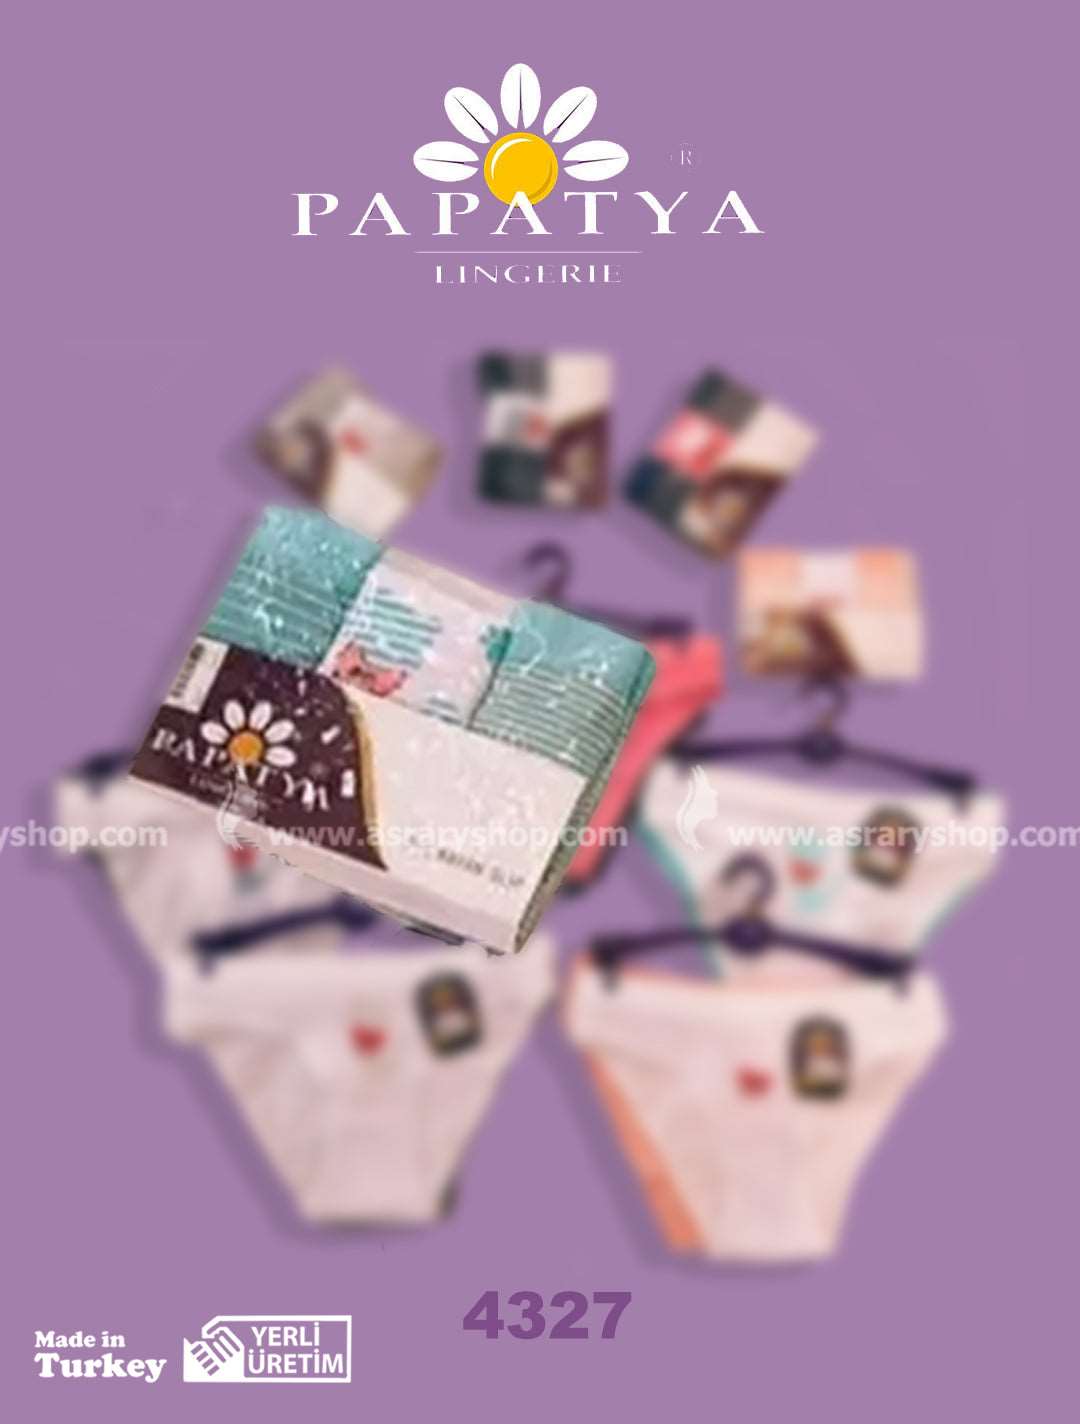 Papatya Cotton Printed Panty (Pack of 3) 4327 Aqua